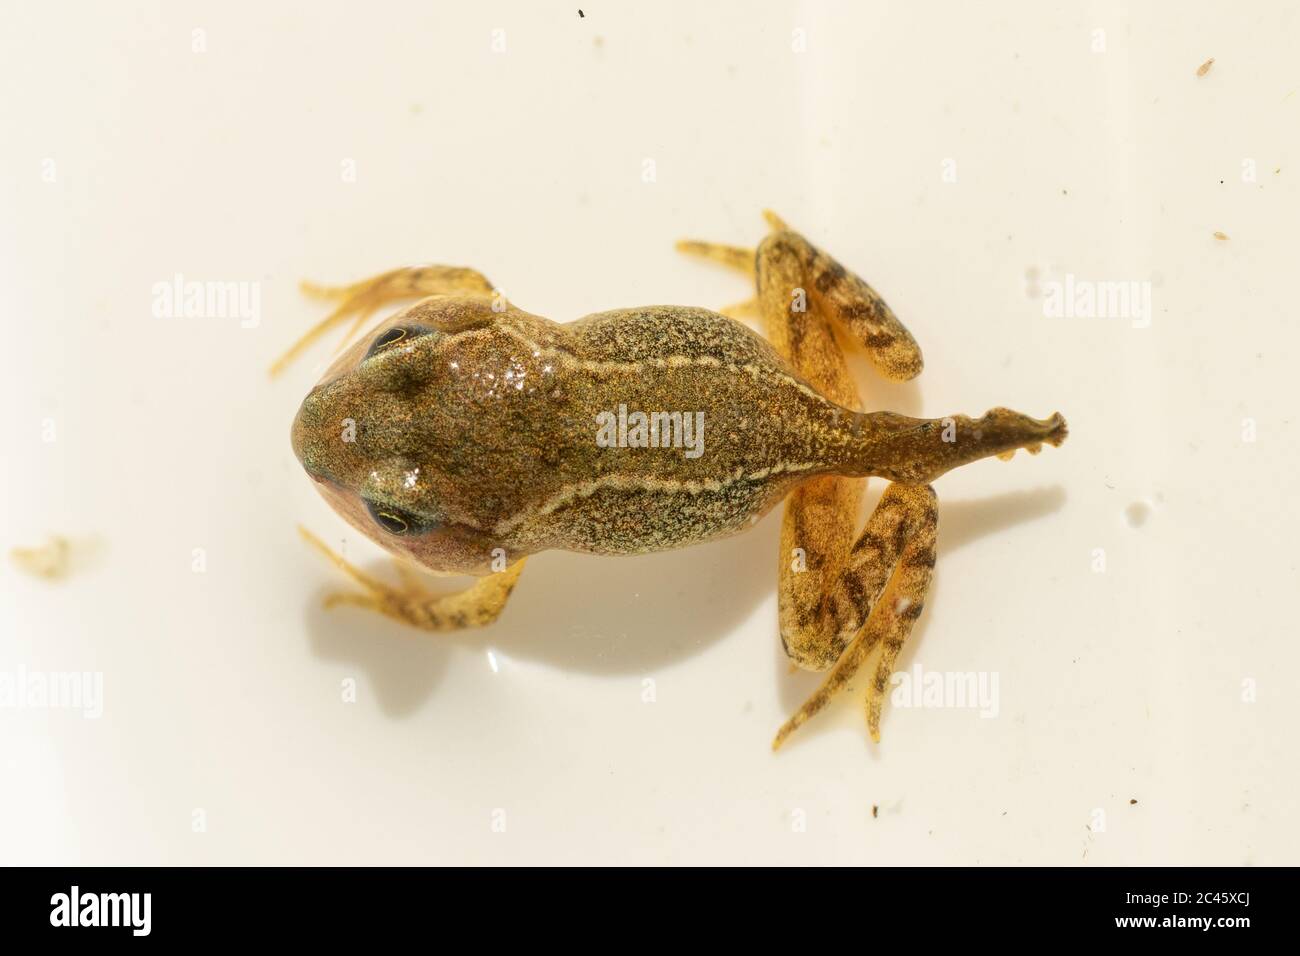 Jeune grenouille de grenouille commune (Rana temporaria) dans le processus de perdre sa queue, métamorphose de tadpole à grenouille, Royaume-Uni Banque D'Images